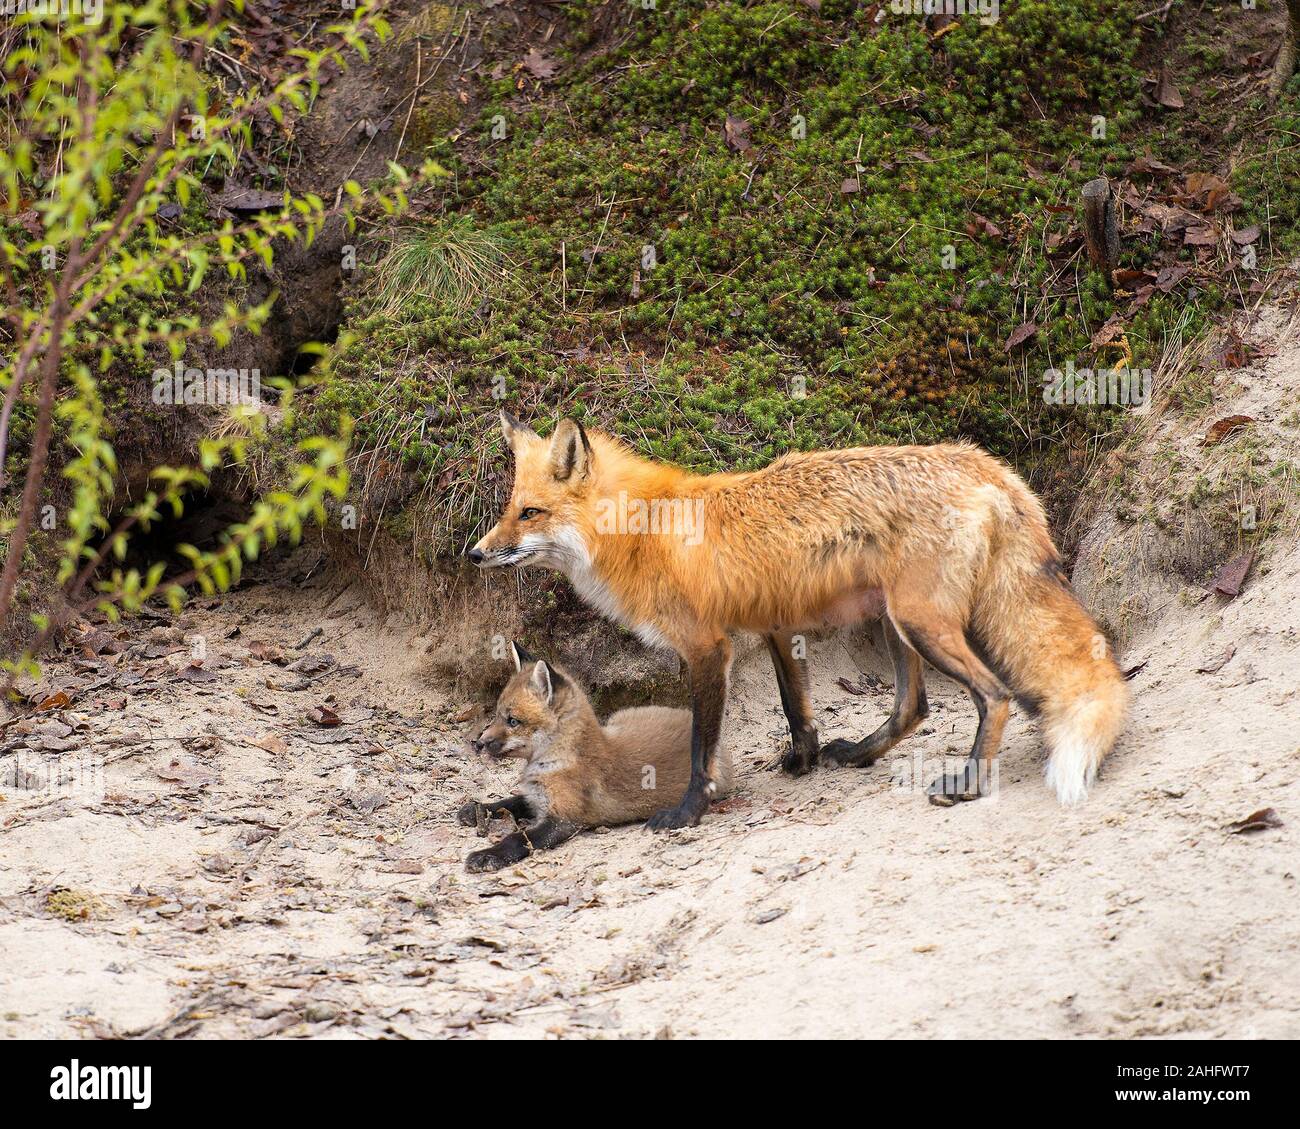 Red Fox Tier Mutter und Kit fox Close-up Profil anzeigen im Wald am leihen den mit Moos Hintergrund und Vordergrund sand in Ihren surroundin Stockfoto